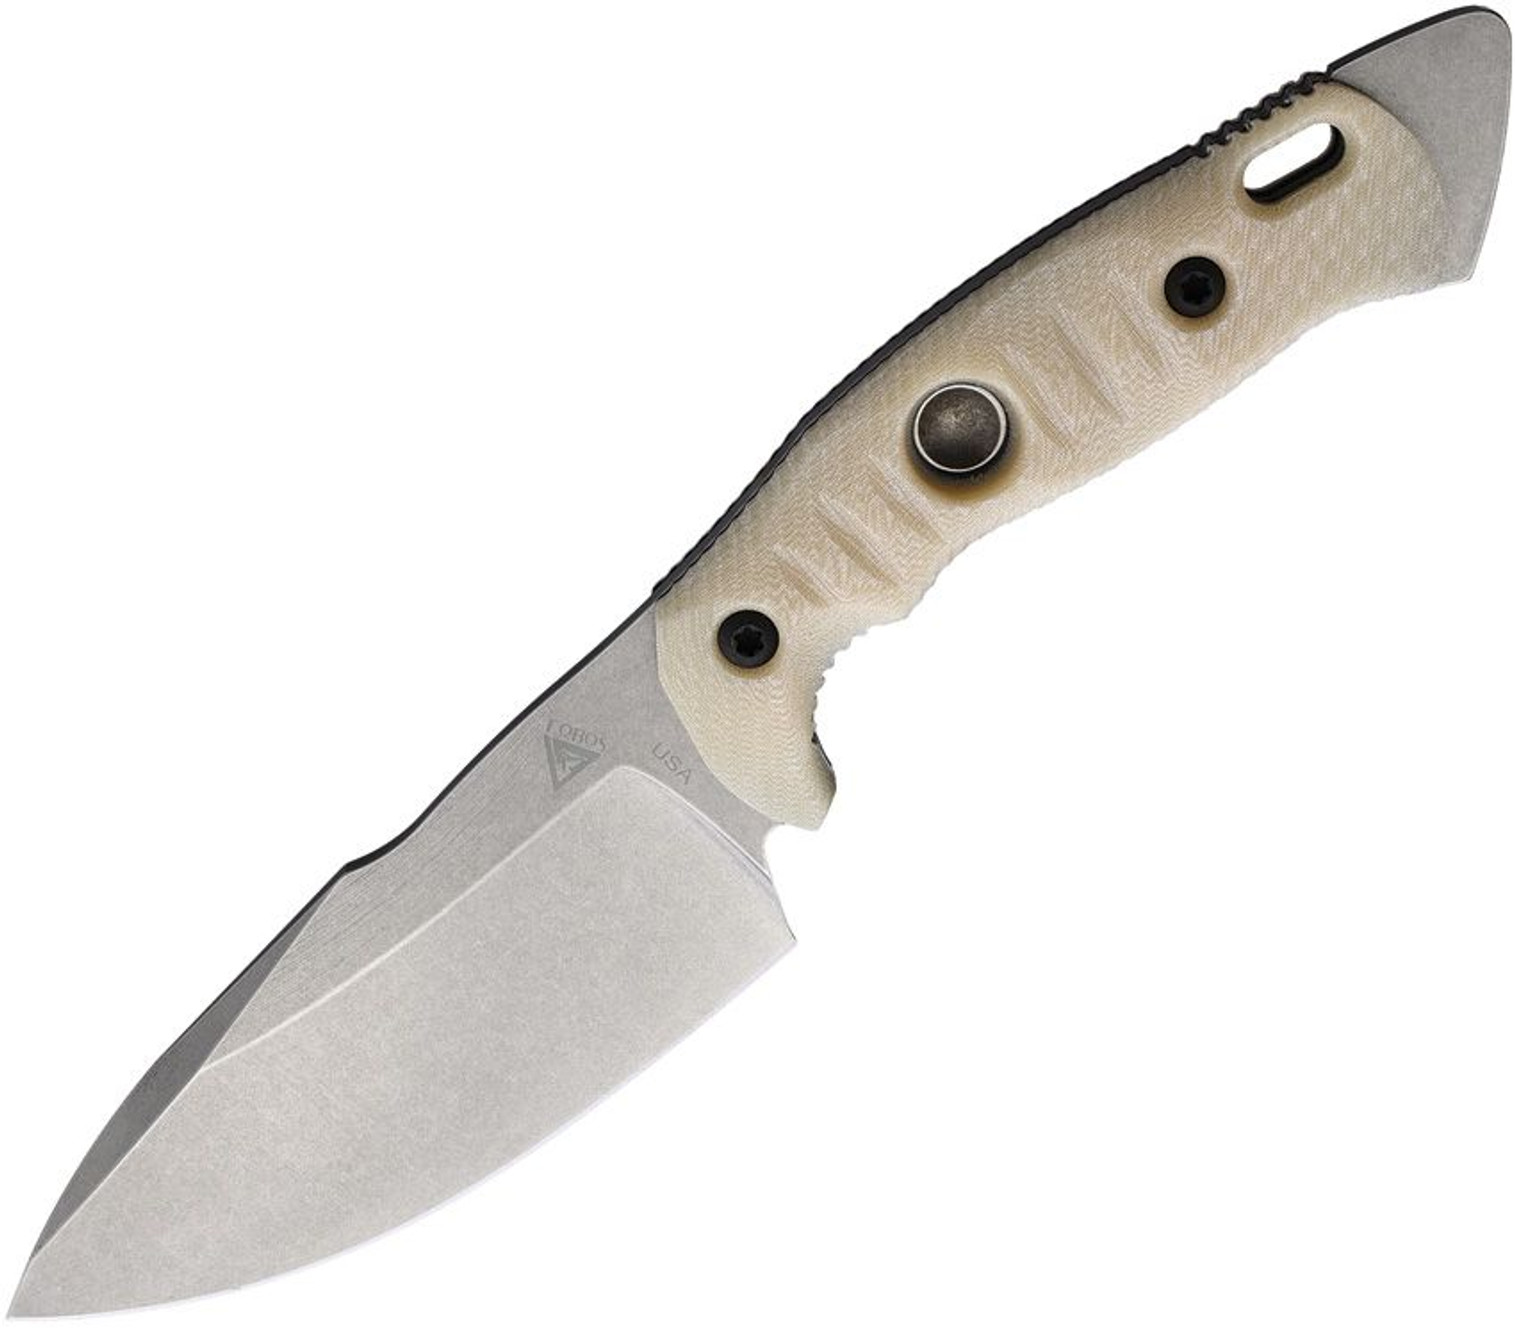  Fobos Knives Alaris Fixed Blade Ivory/Black